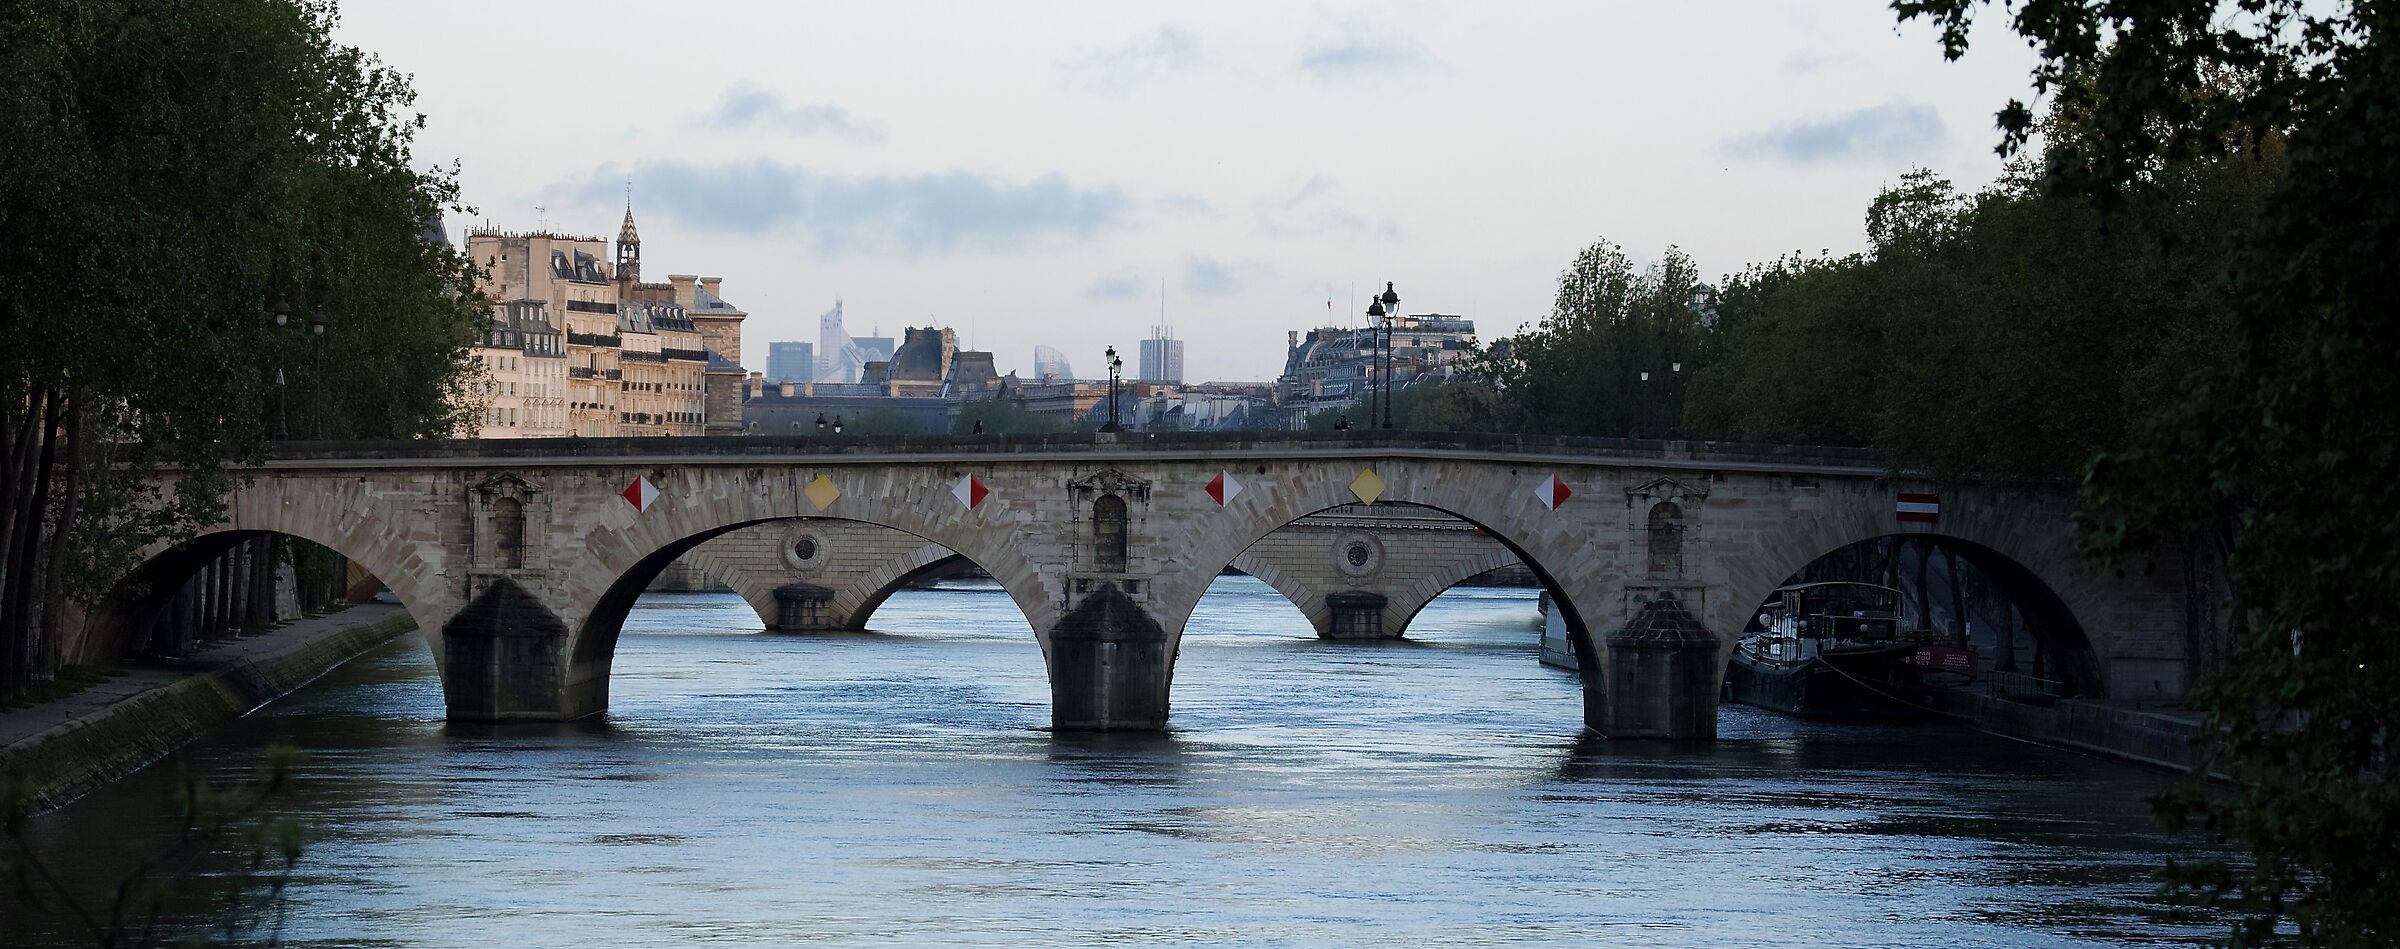 Parigi - ponti sulla Senna...